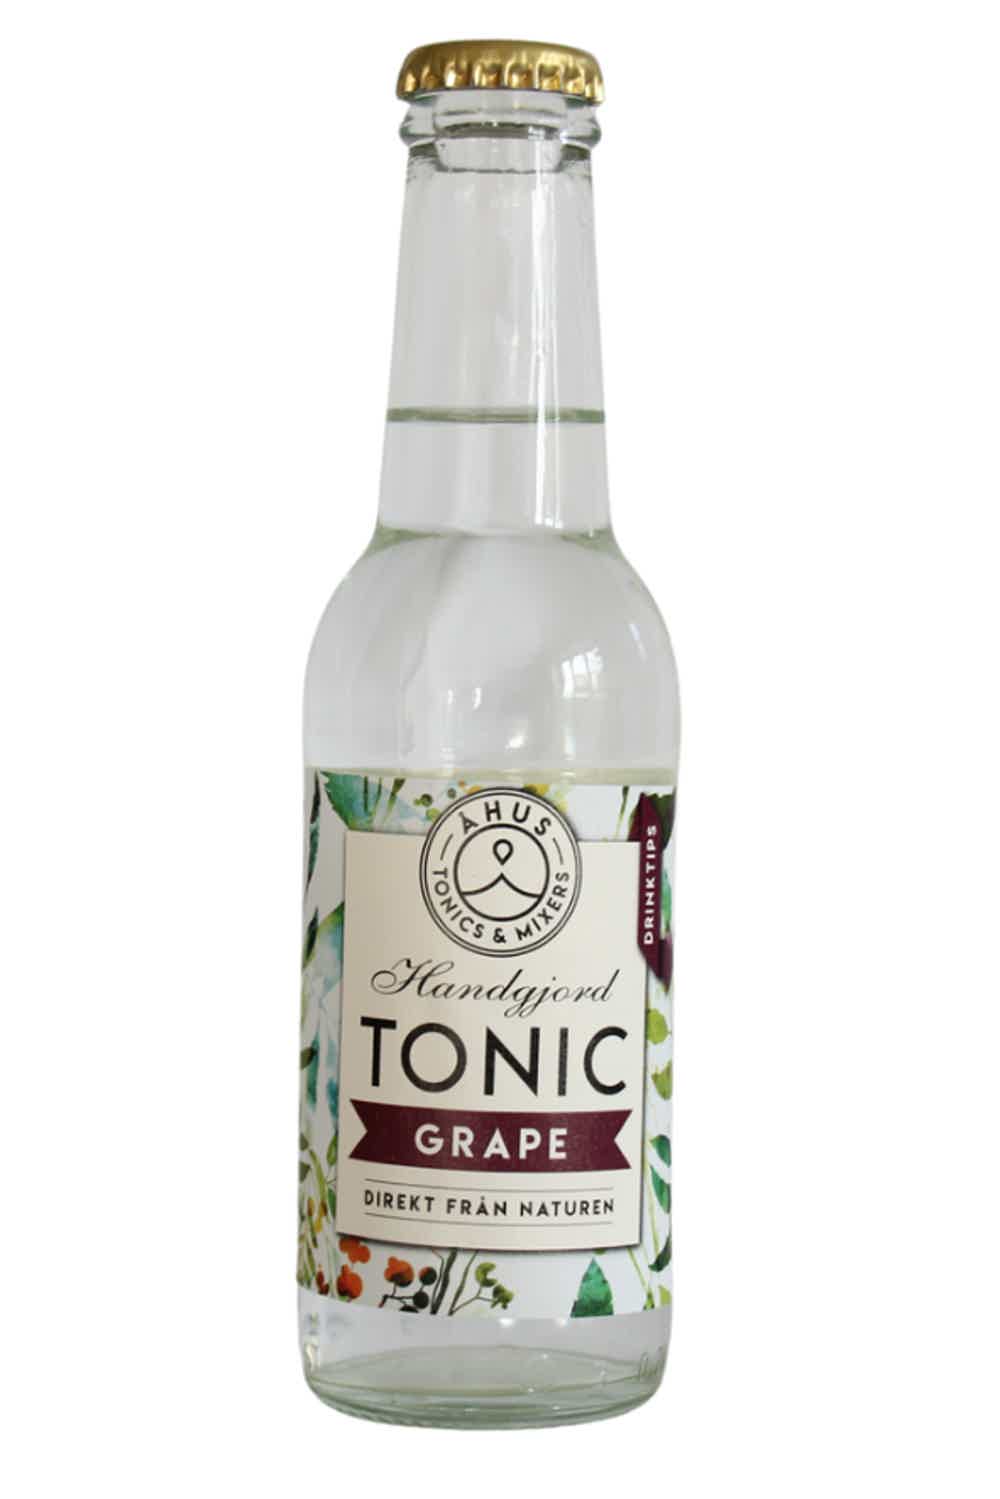 Åhus Tonic Grape 0.0% 0.2L, Non alcohol